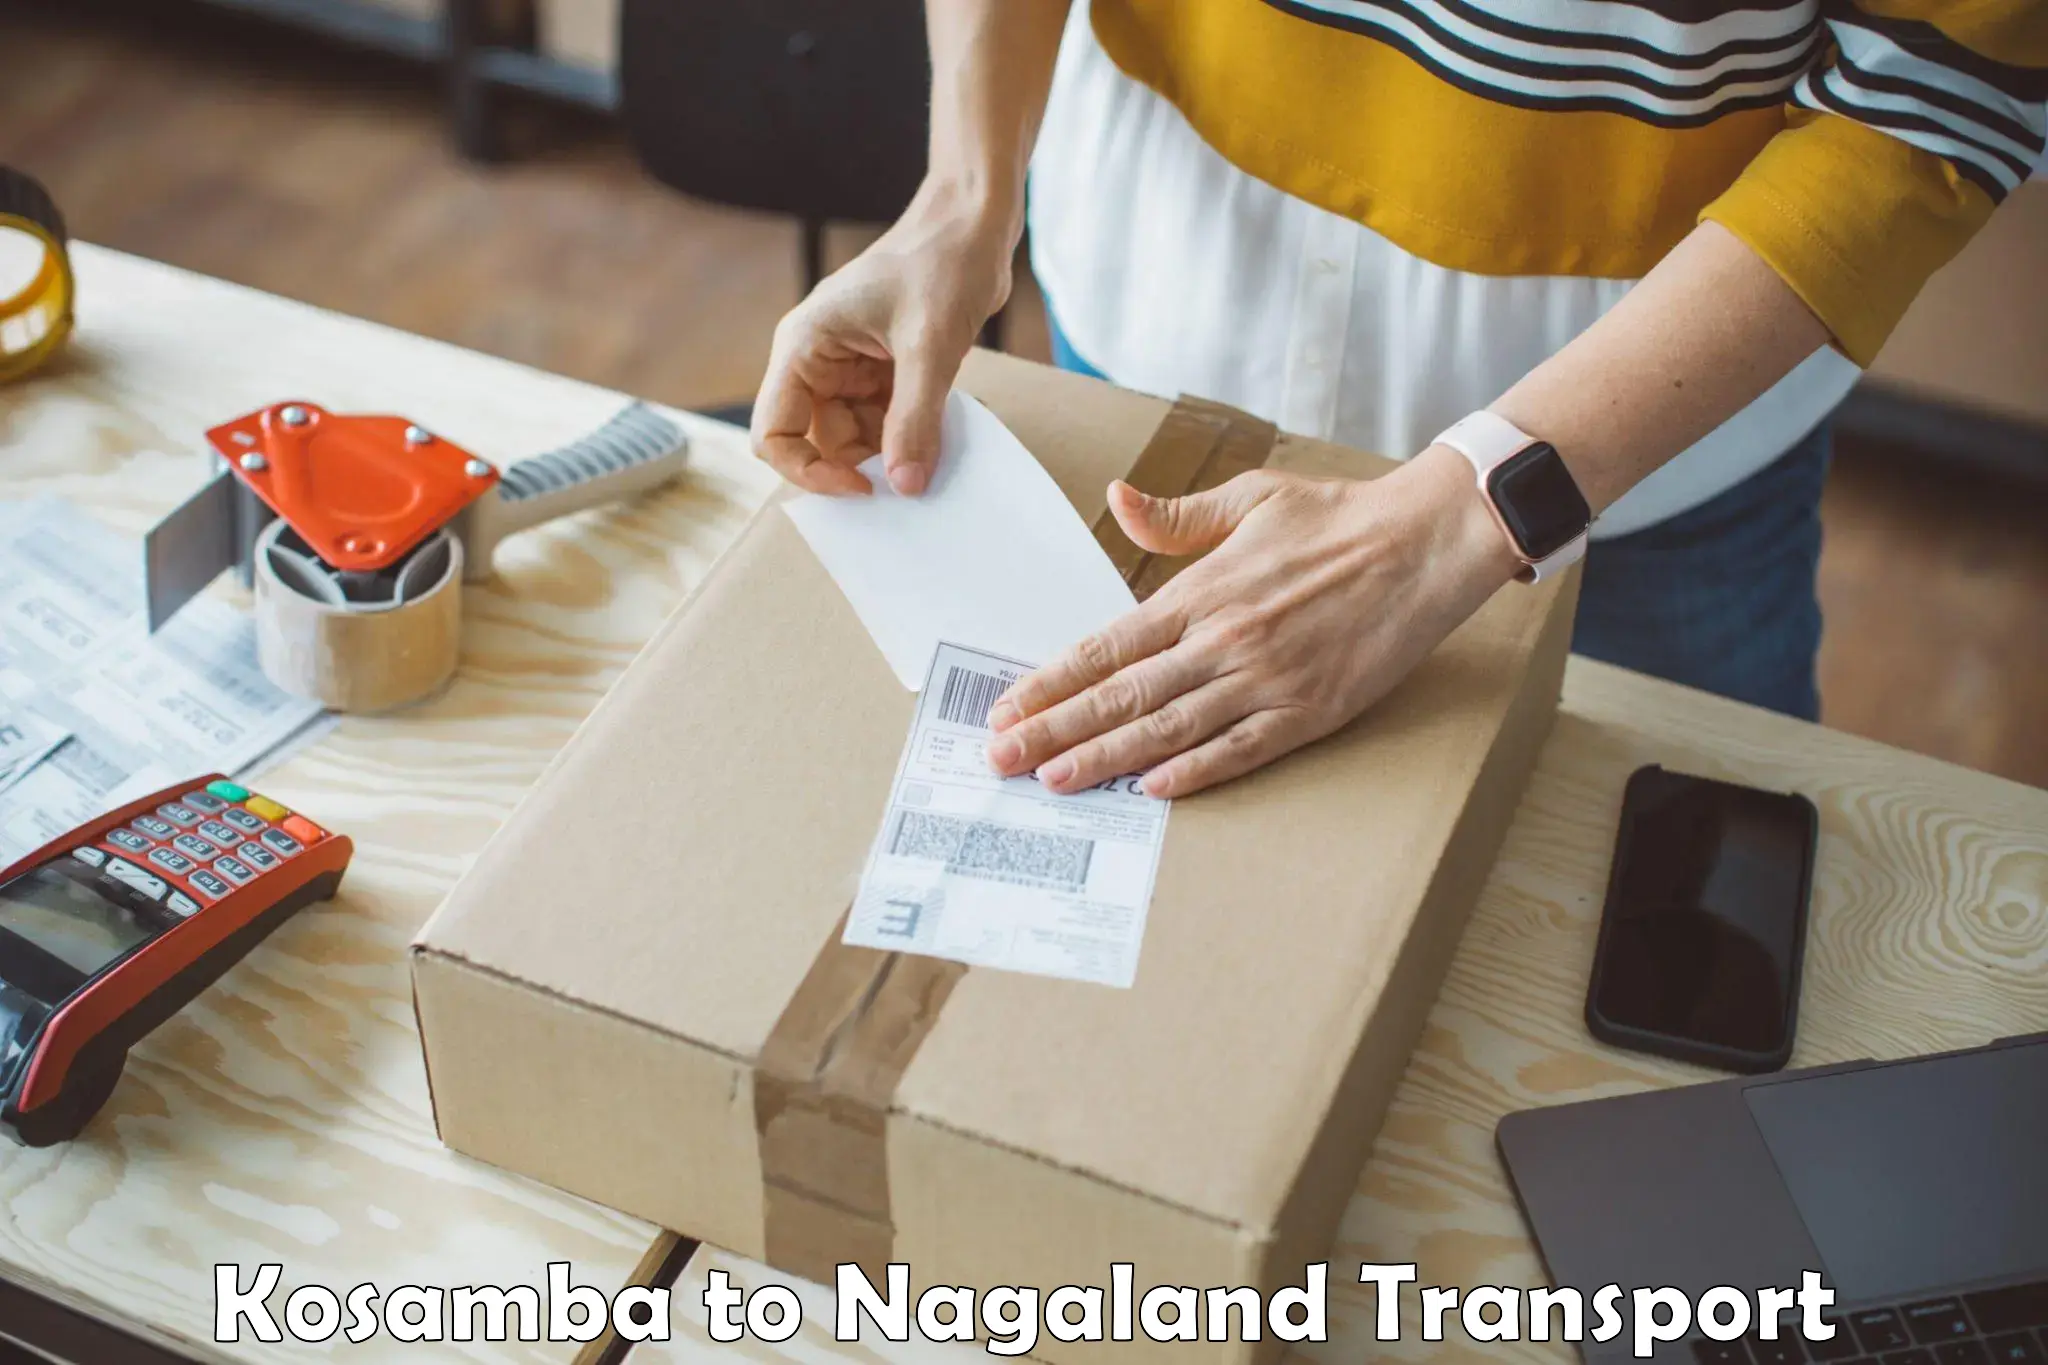 Shipping partner Kosamba to NIT Nagaland